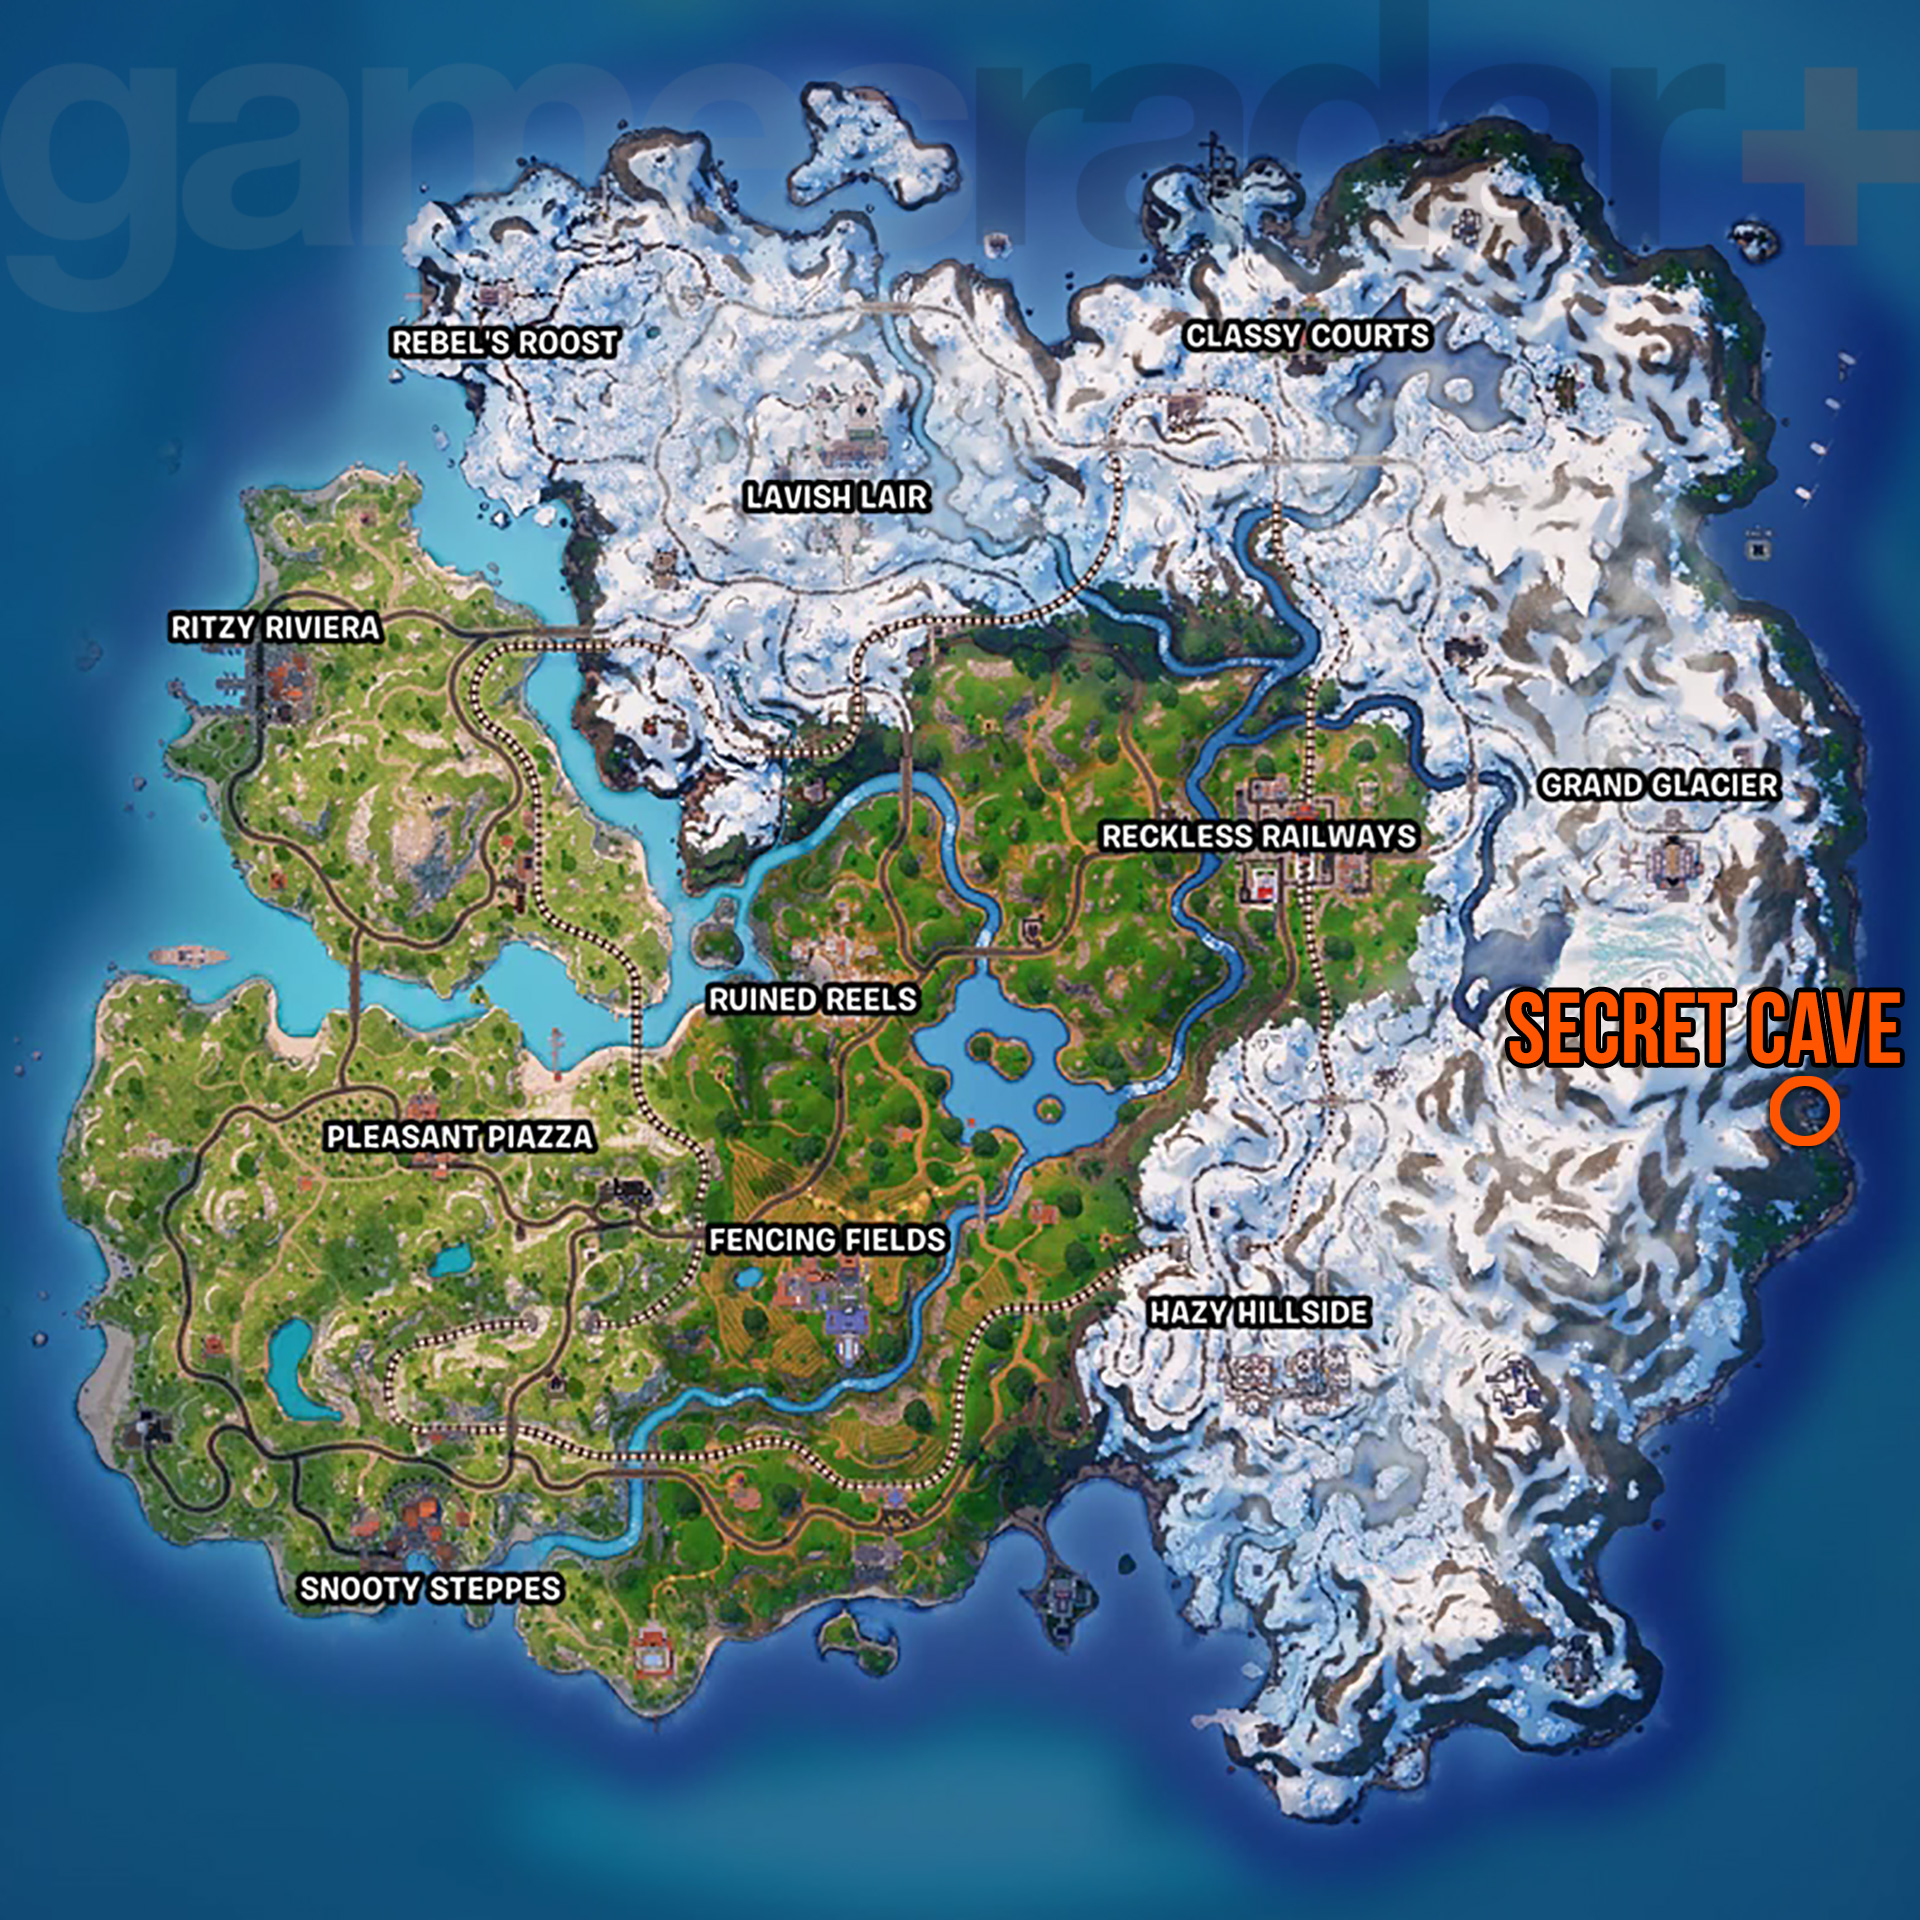 Fortnite Secret Cave locația pe hartă